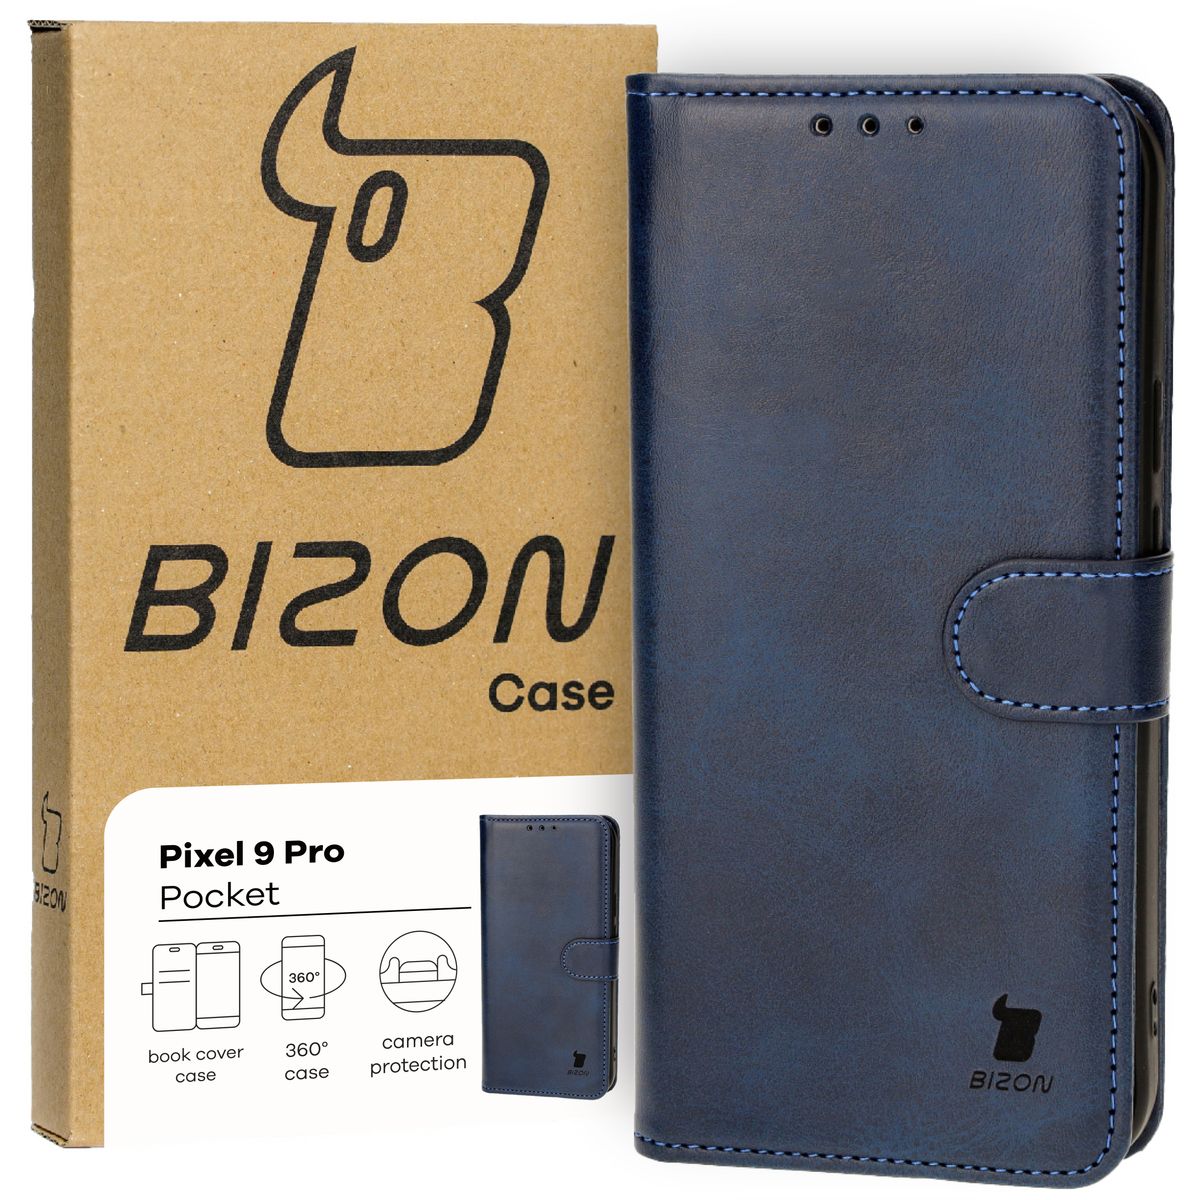 Schutzhülle für Pixel 9 Pro, Bizon Case Pocket, Dunkelblau